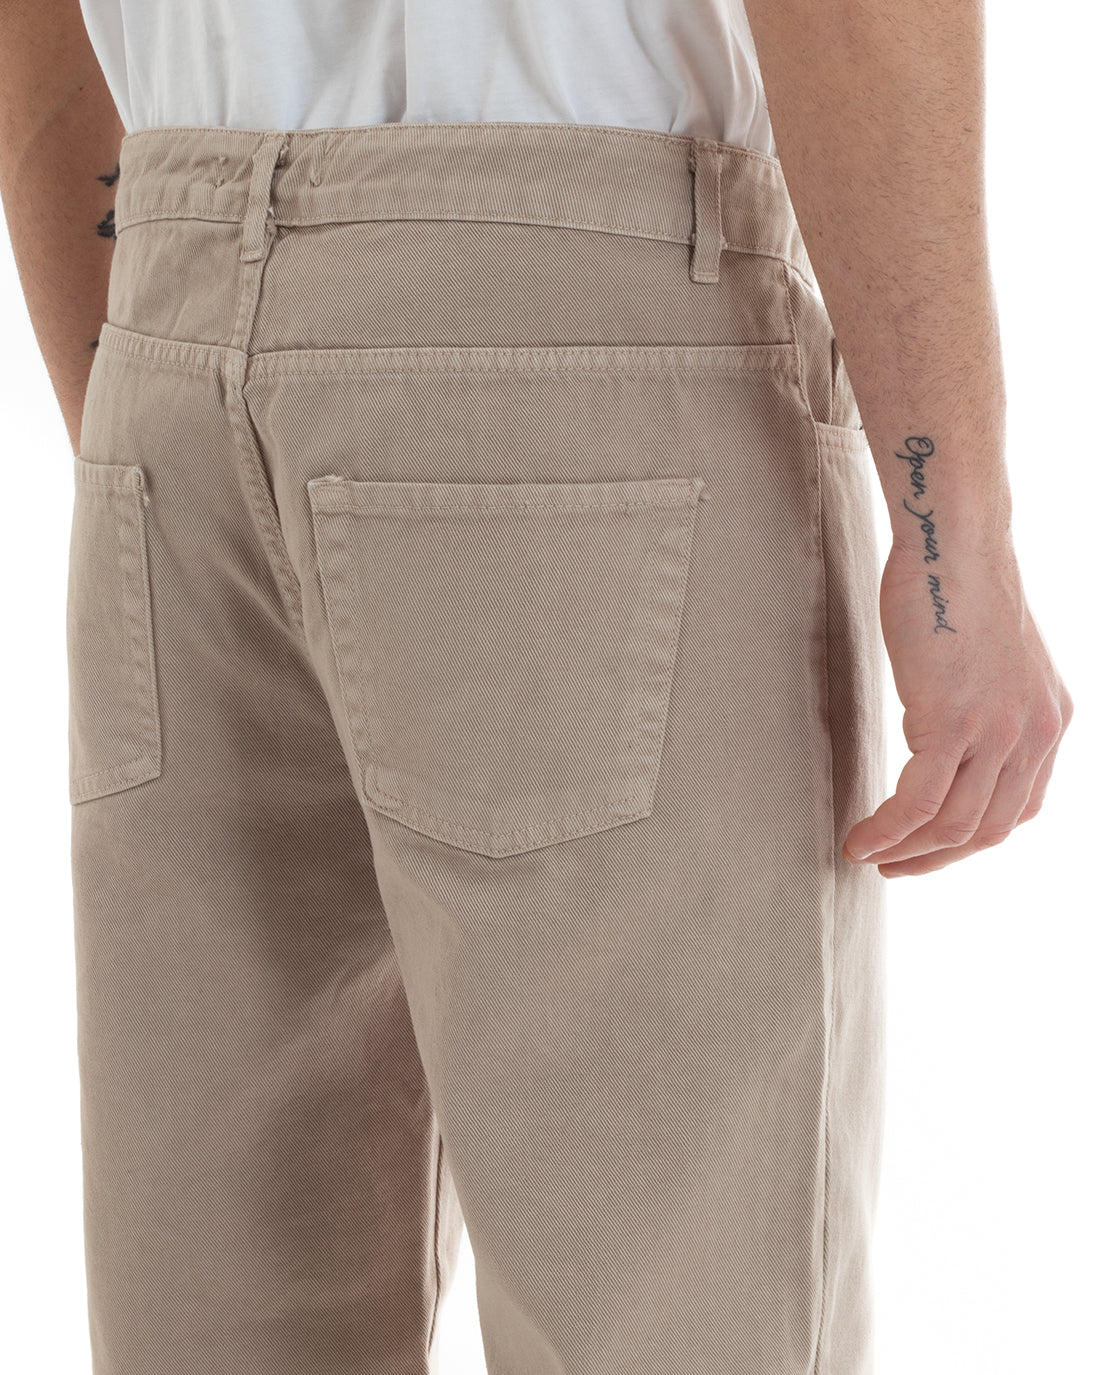 Pantaloni Uomo Lungo Jeans Tinta Unita Cinque Tasche Beige Straight Fit GIOSAL-P5666A